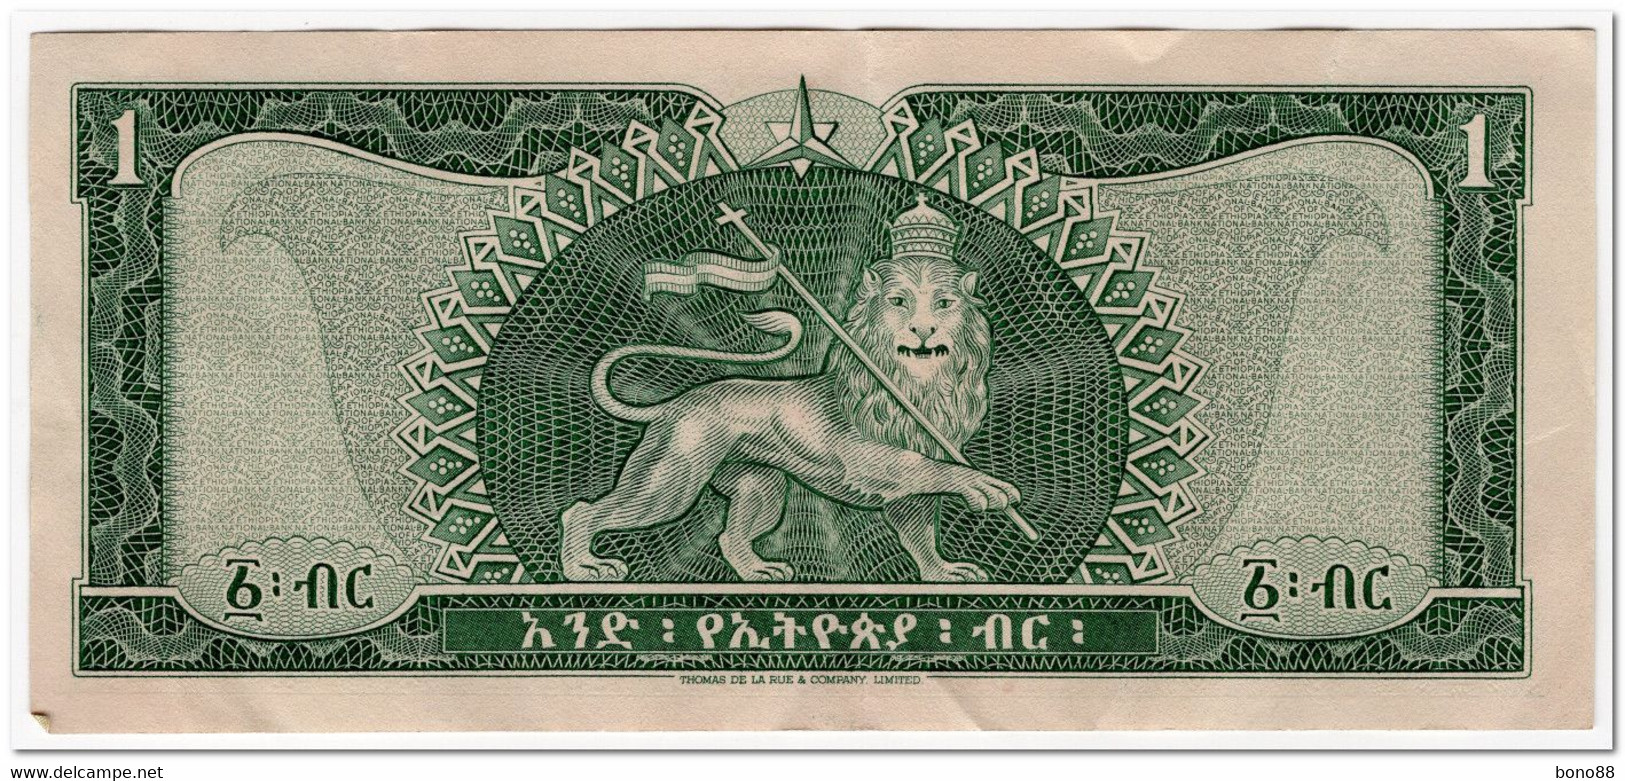 ETHIOPIA,1 DOLLAR,1966,P.25,CLEAN VF+ - Ethiopie